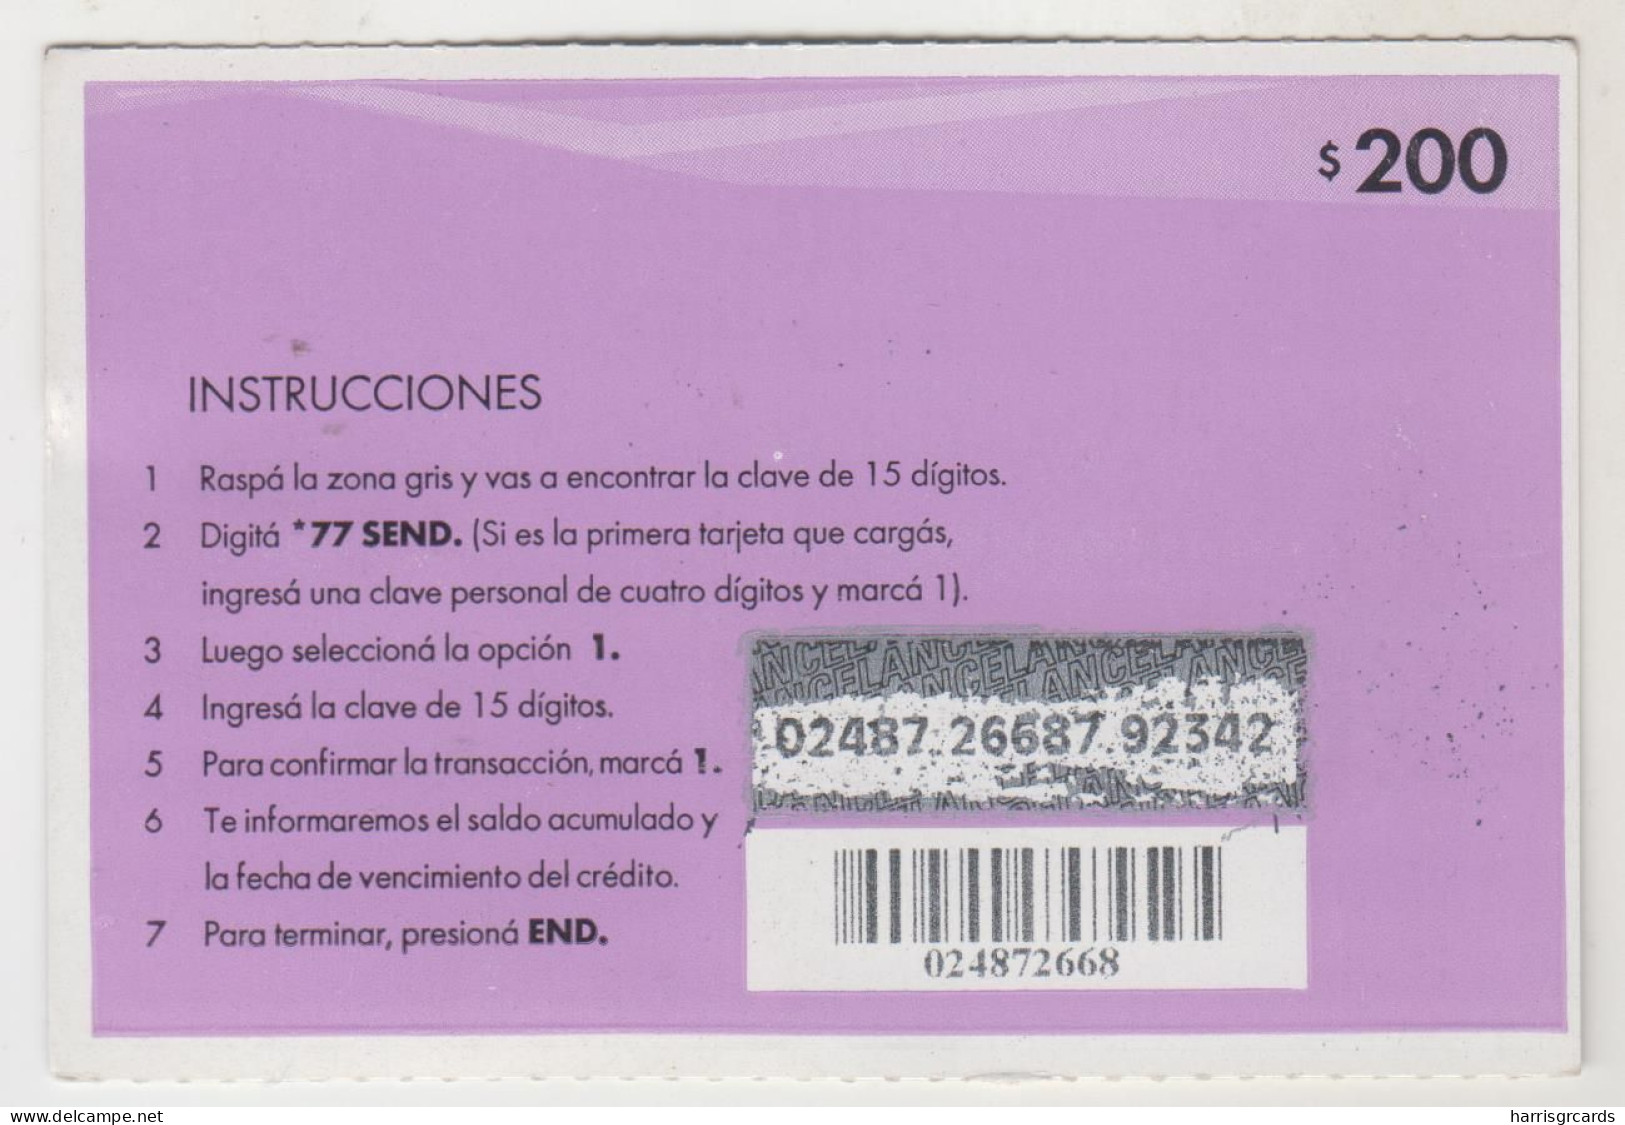 URUGUAY - Más Ventajas GSM, Pink , 200 $ , ANCEL Maxi GSM Refill Card, Used - Uruguay